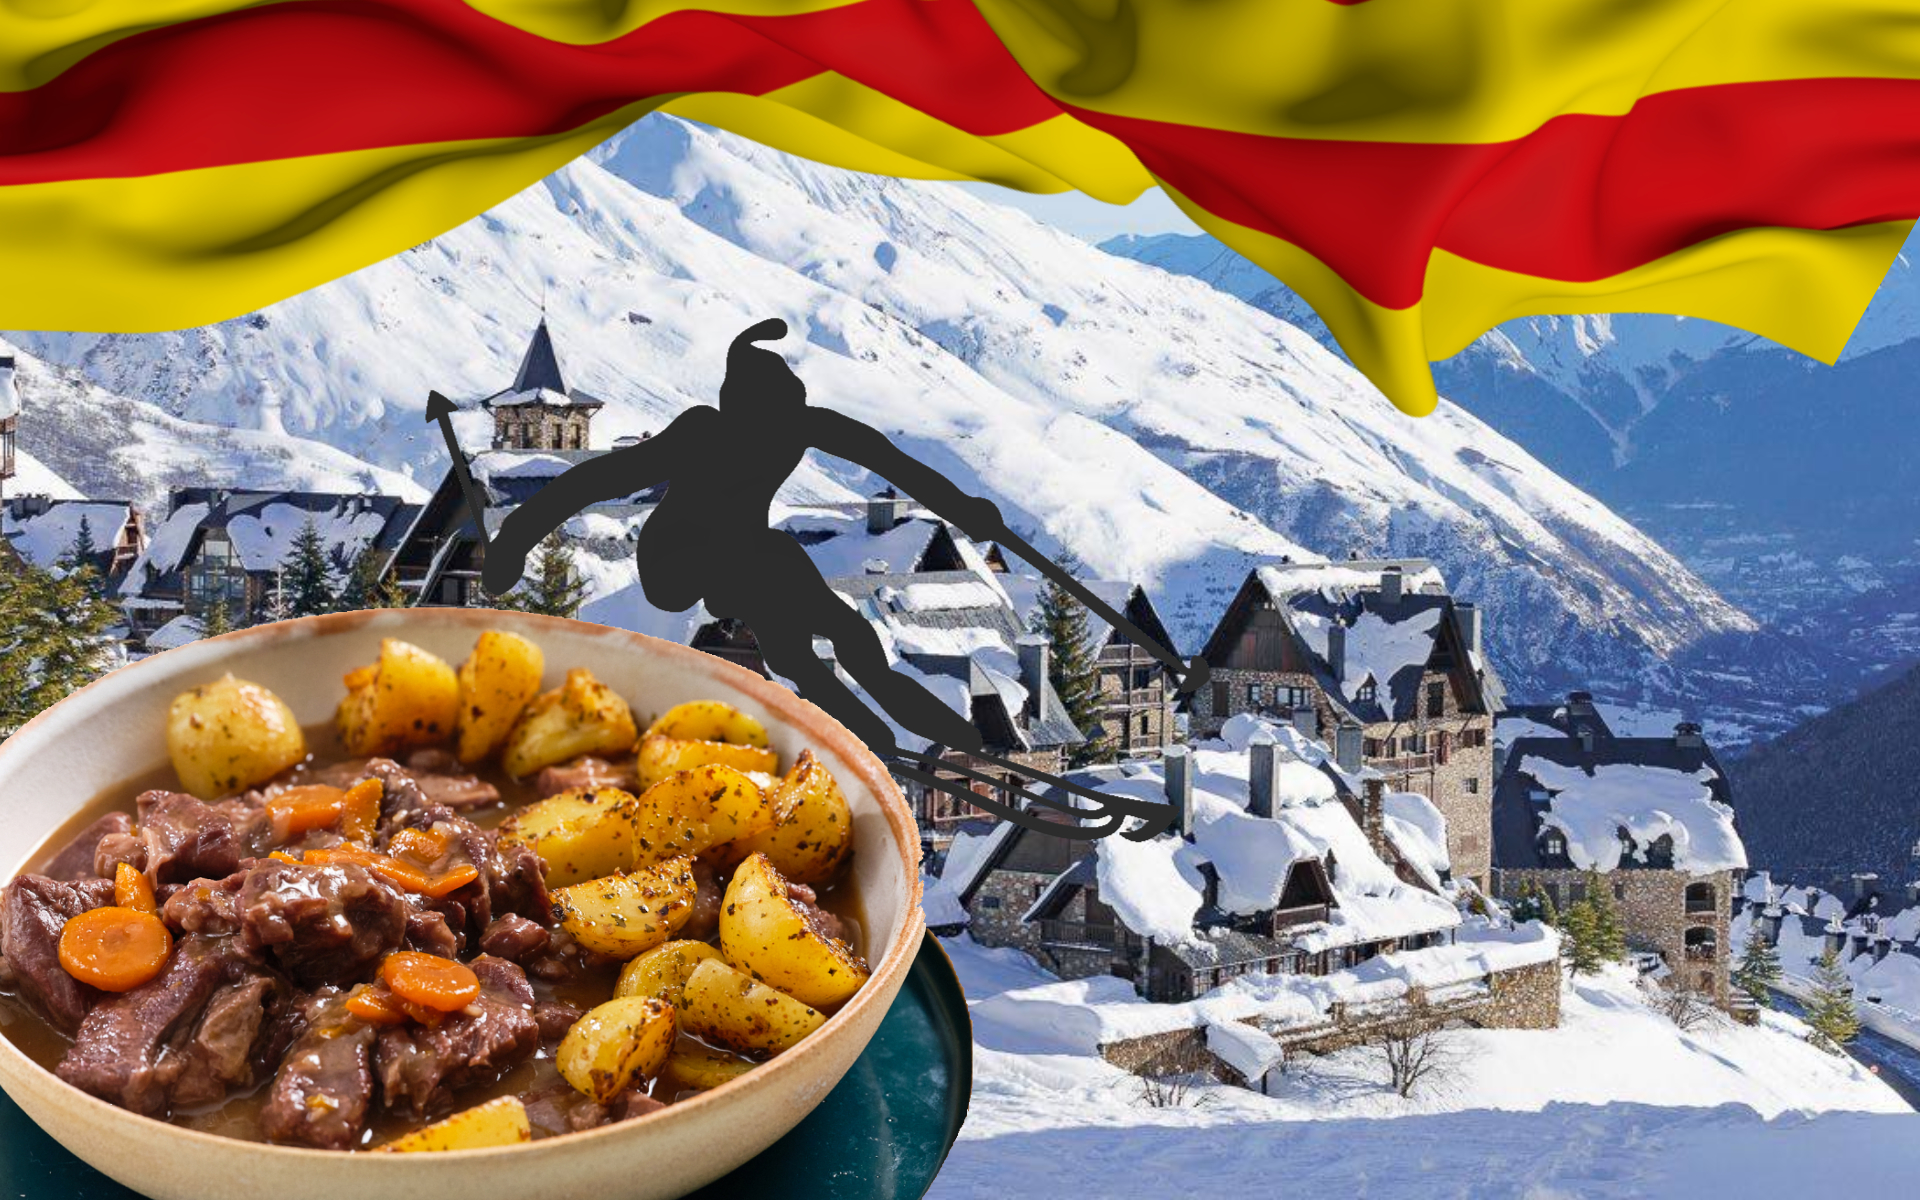 Dónde comer en el Pirineo: los mejores restaurantes que son una joya para descubrir en la montaña